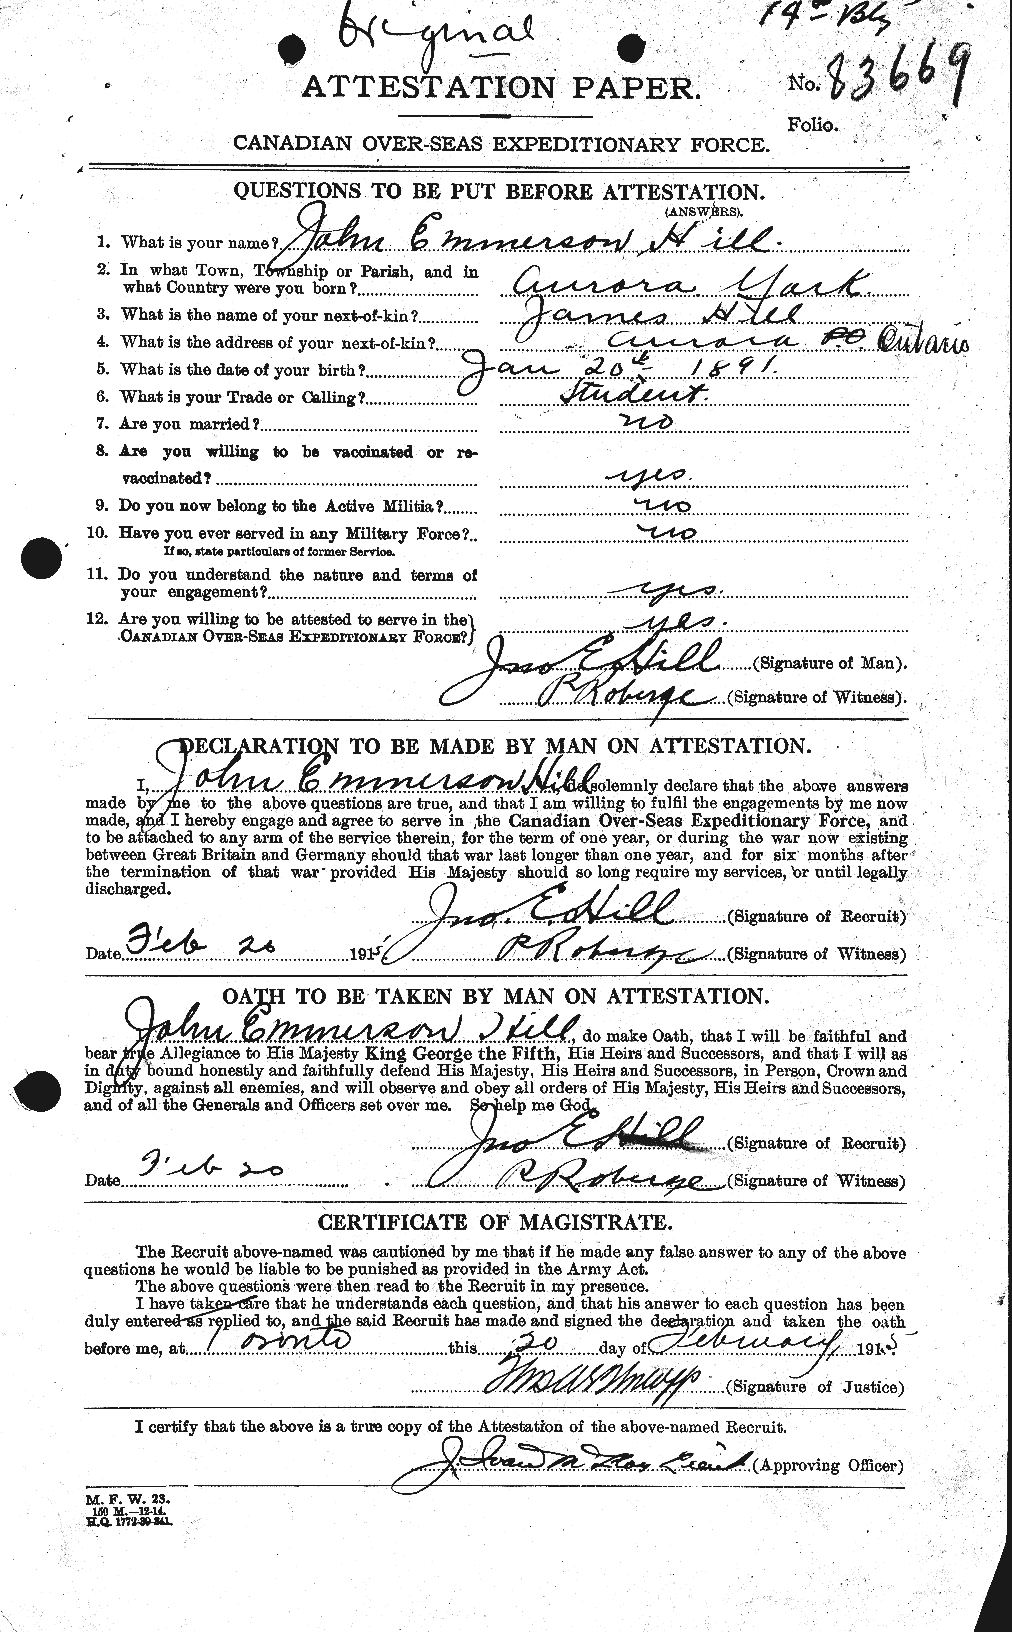 Dossiers du Personnel de la Première Guerre mondiale - CEC 398767a